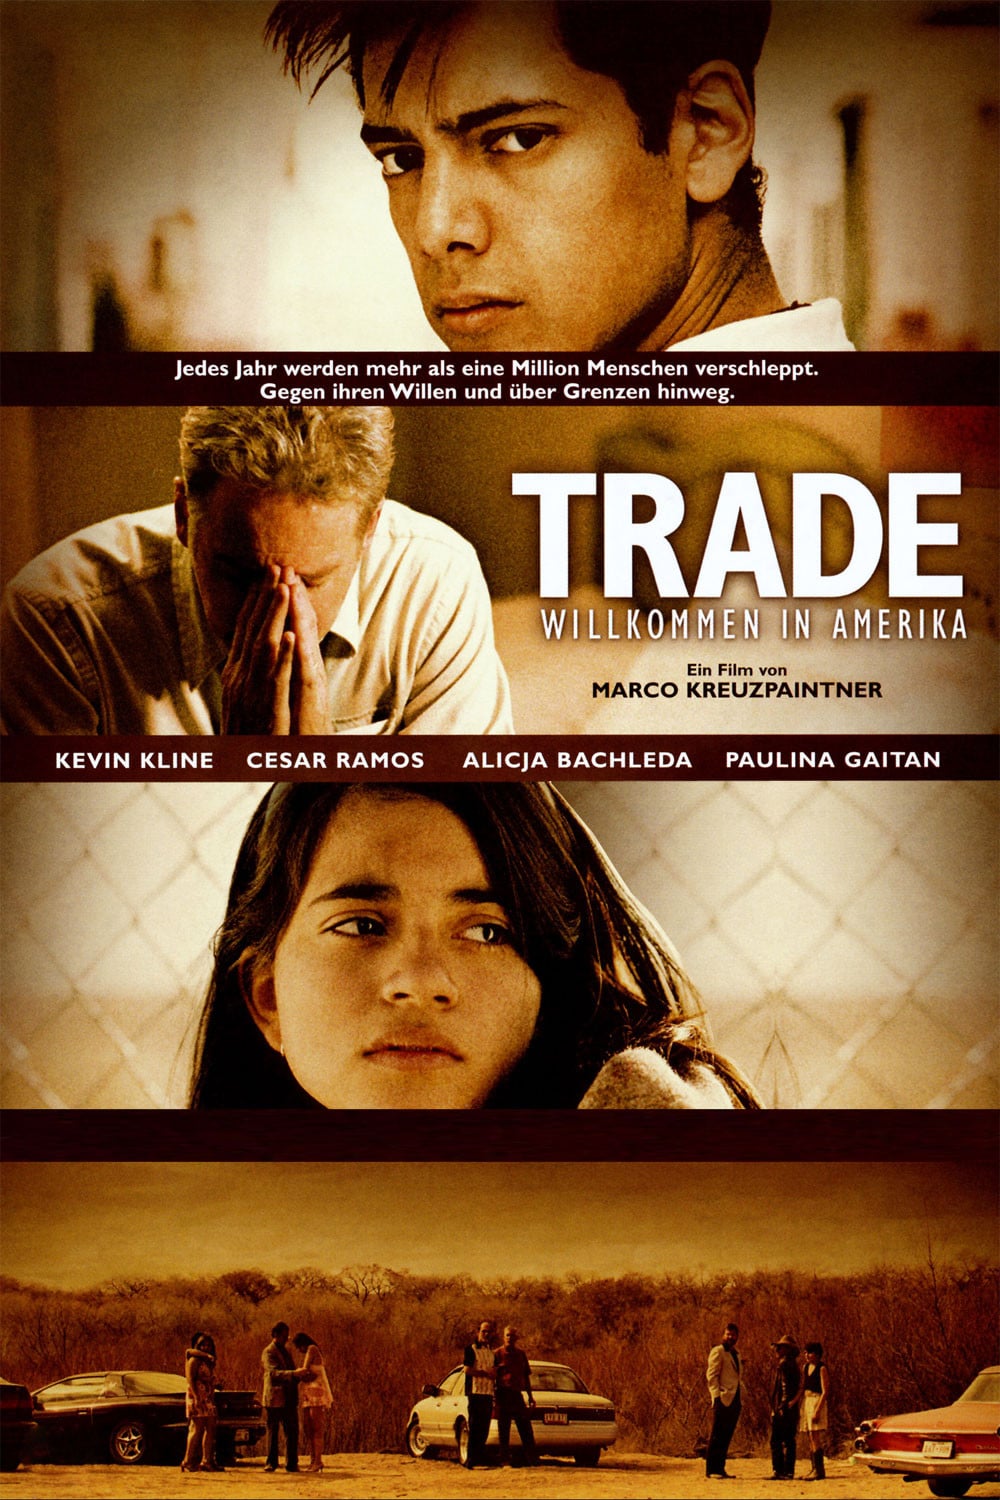 Plakat von "Trade - Willkommen in Amerika"